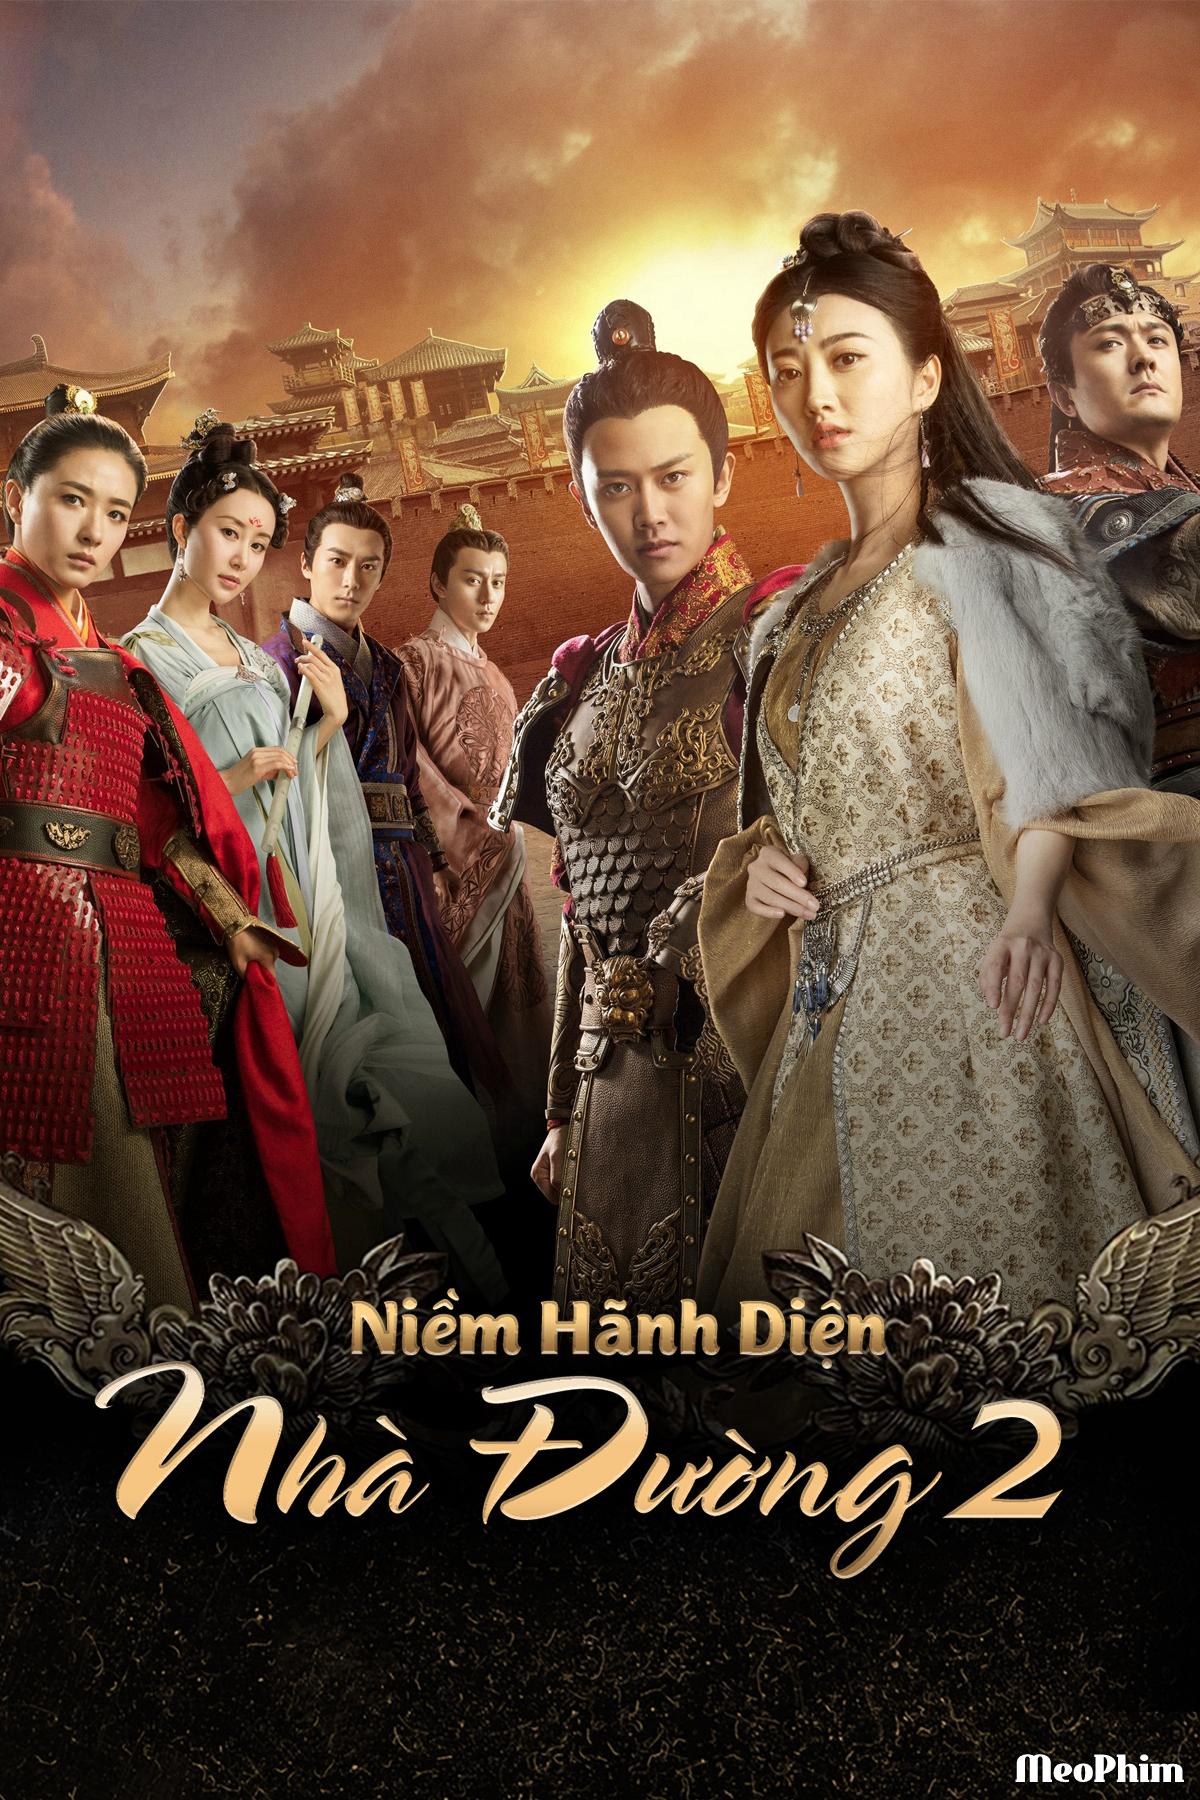 Niềm Hãnh Diện Nhà Đường 2 - The Glory Of Tang Dynasty 2 (2017)